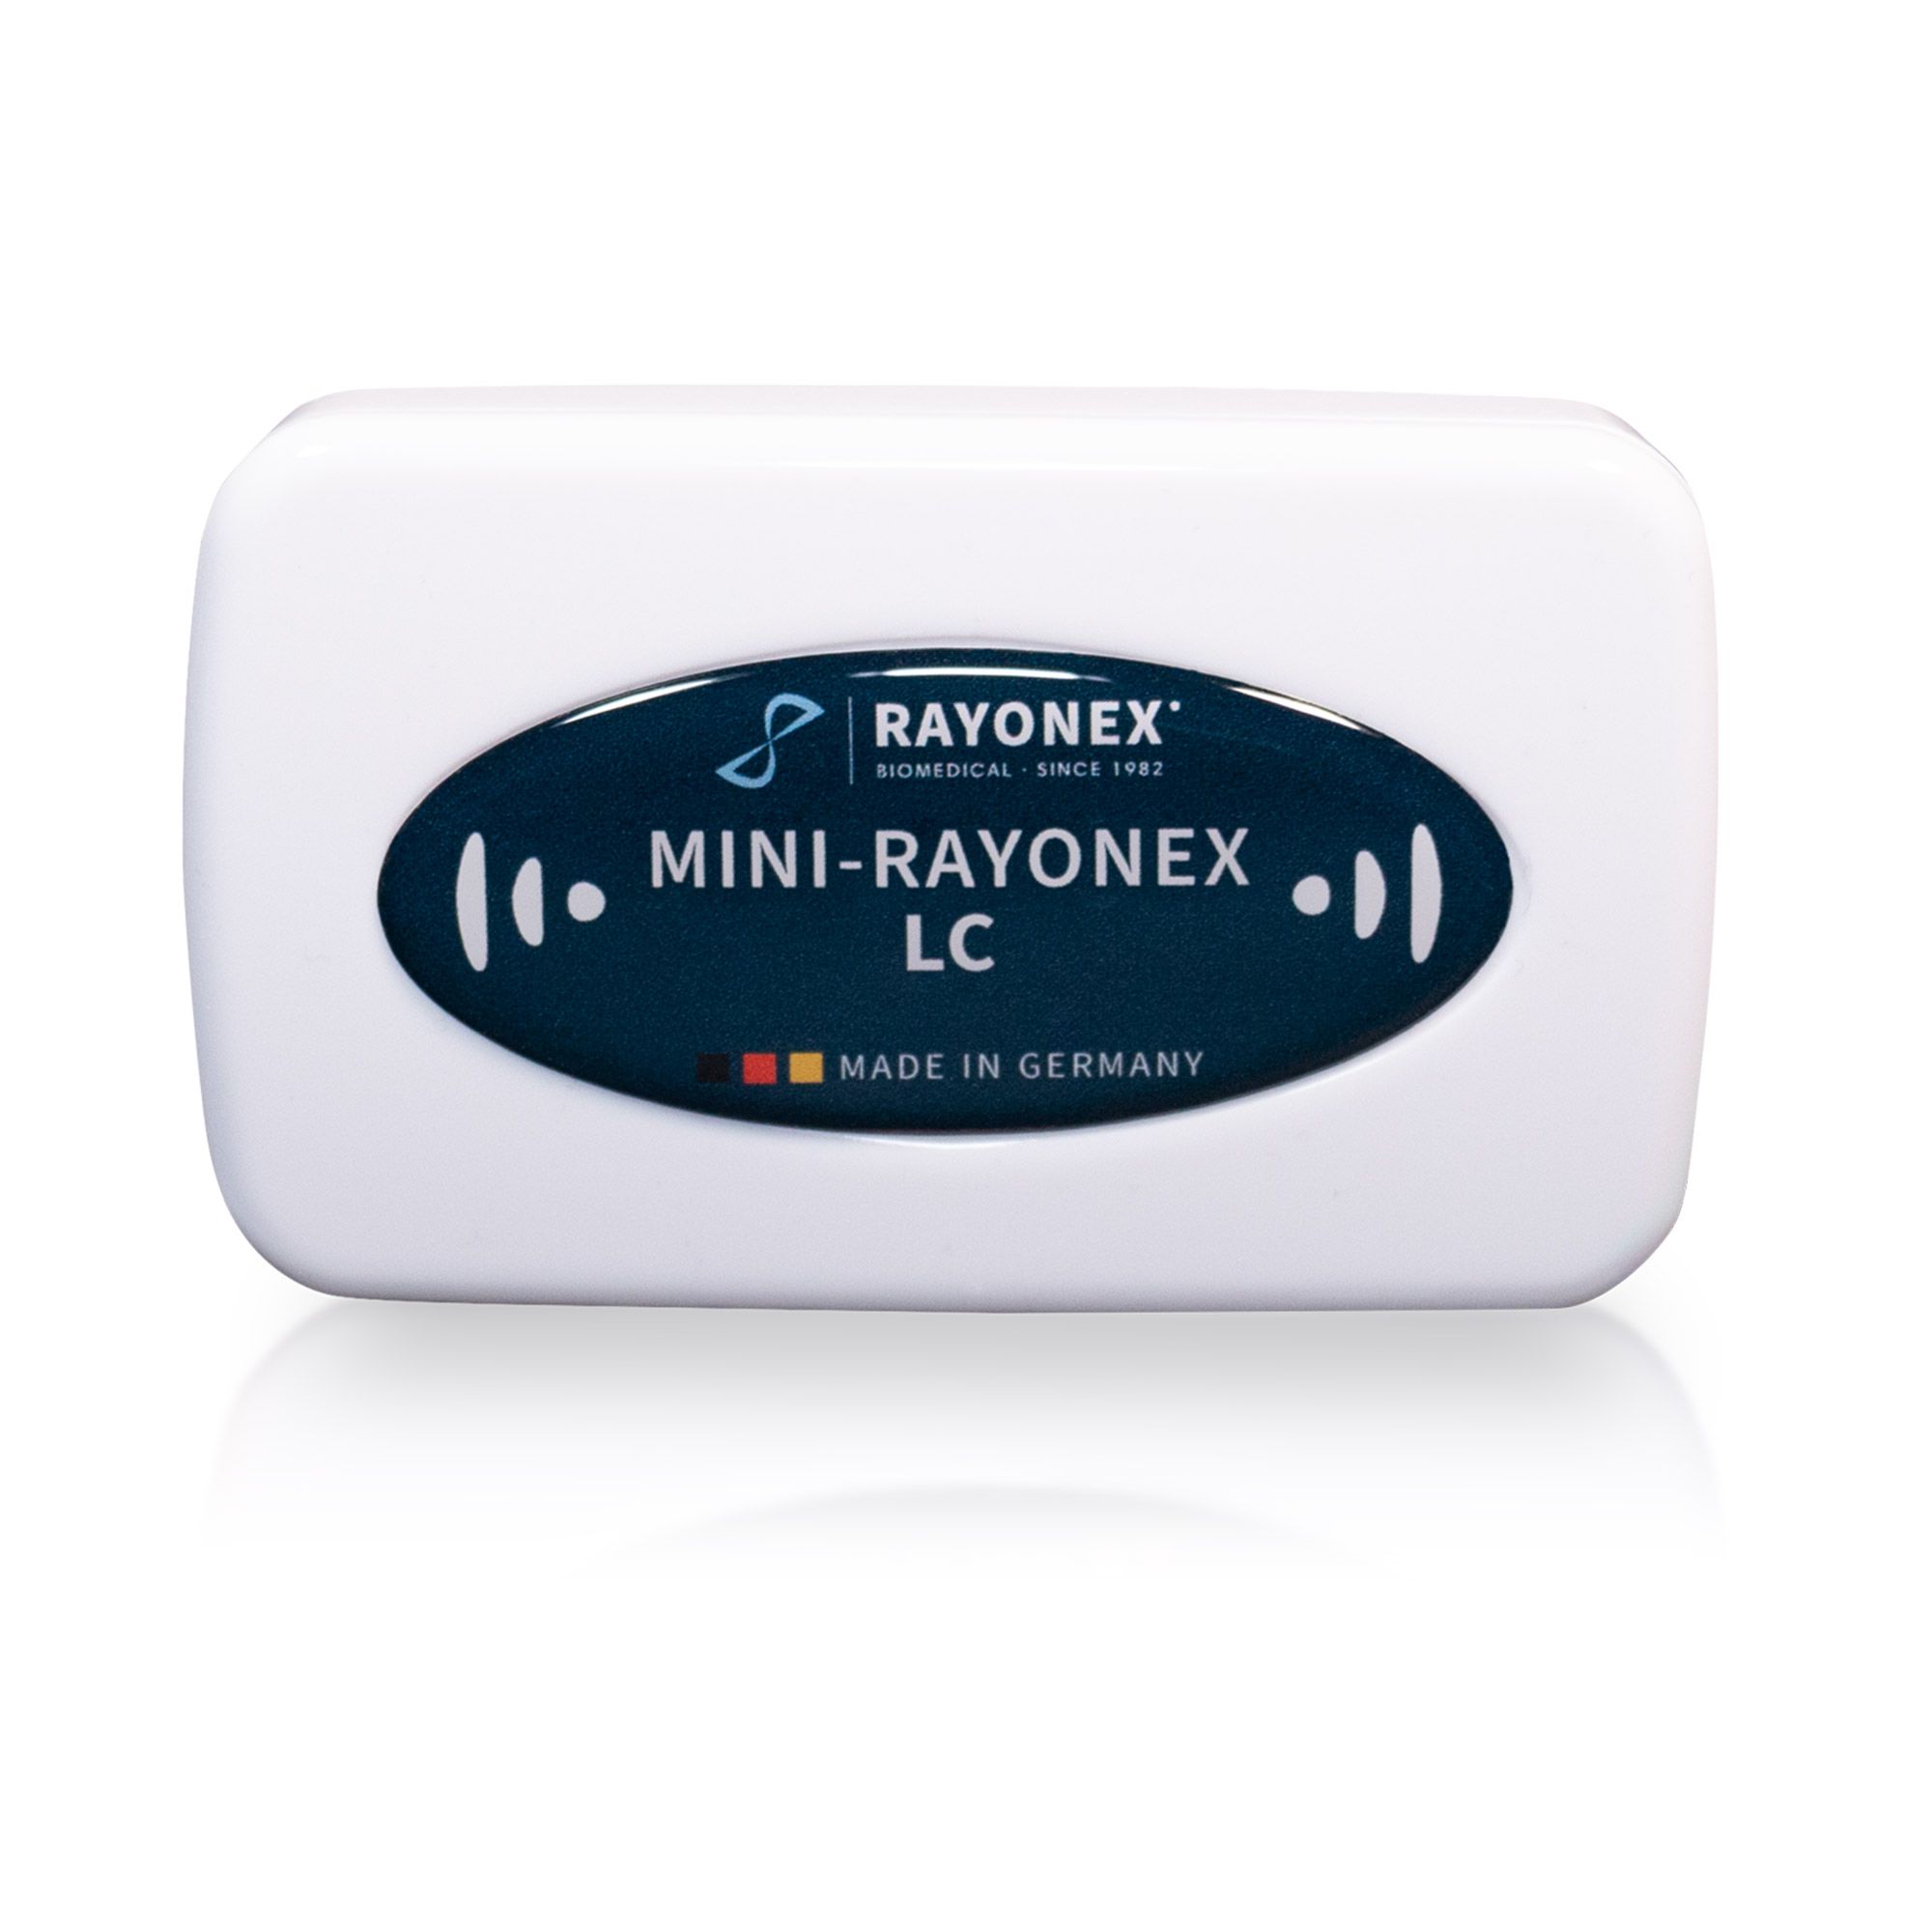 Mini-Rayonex LC